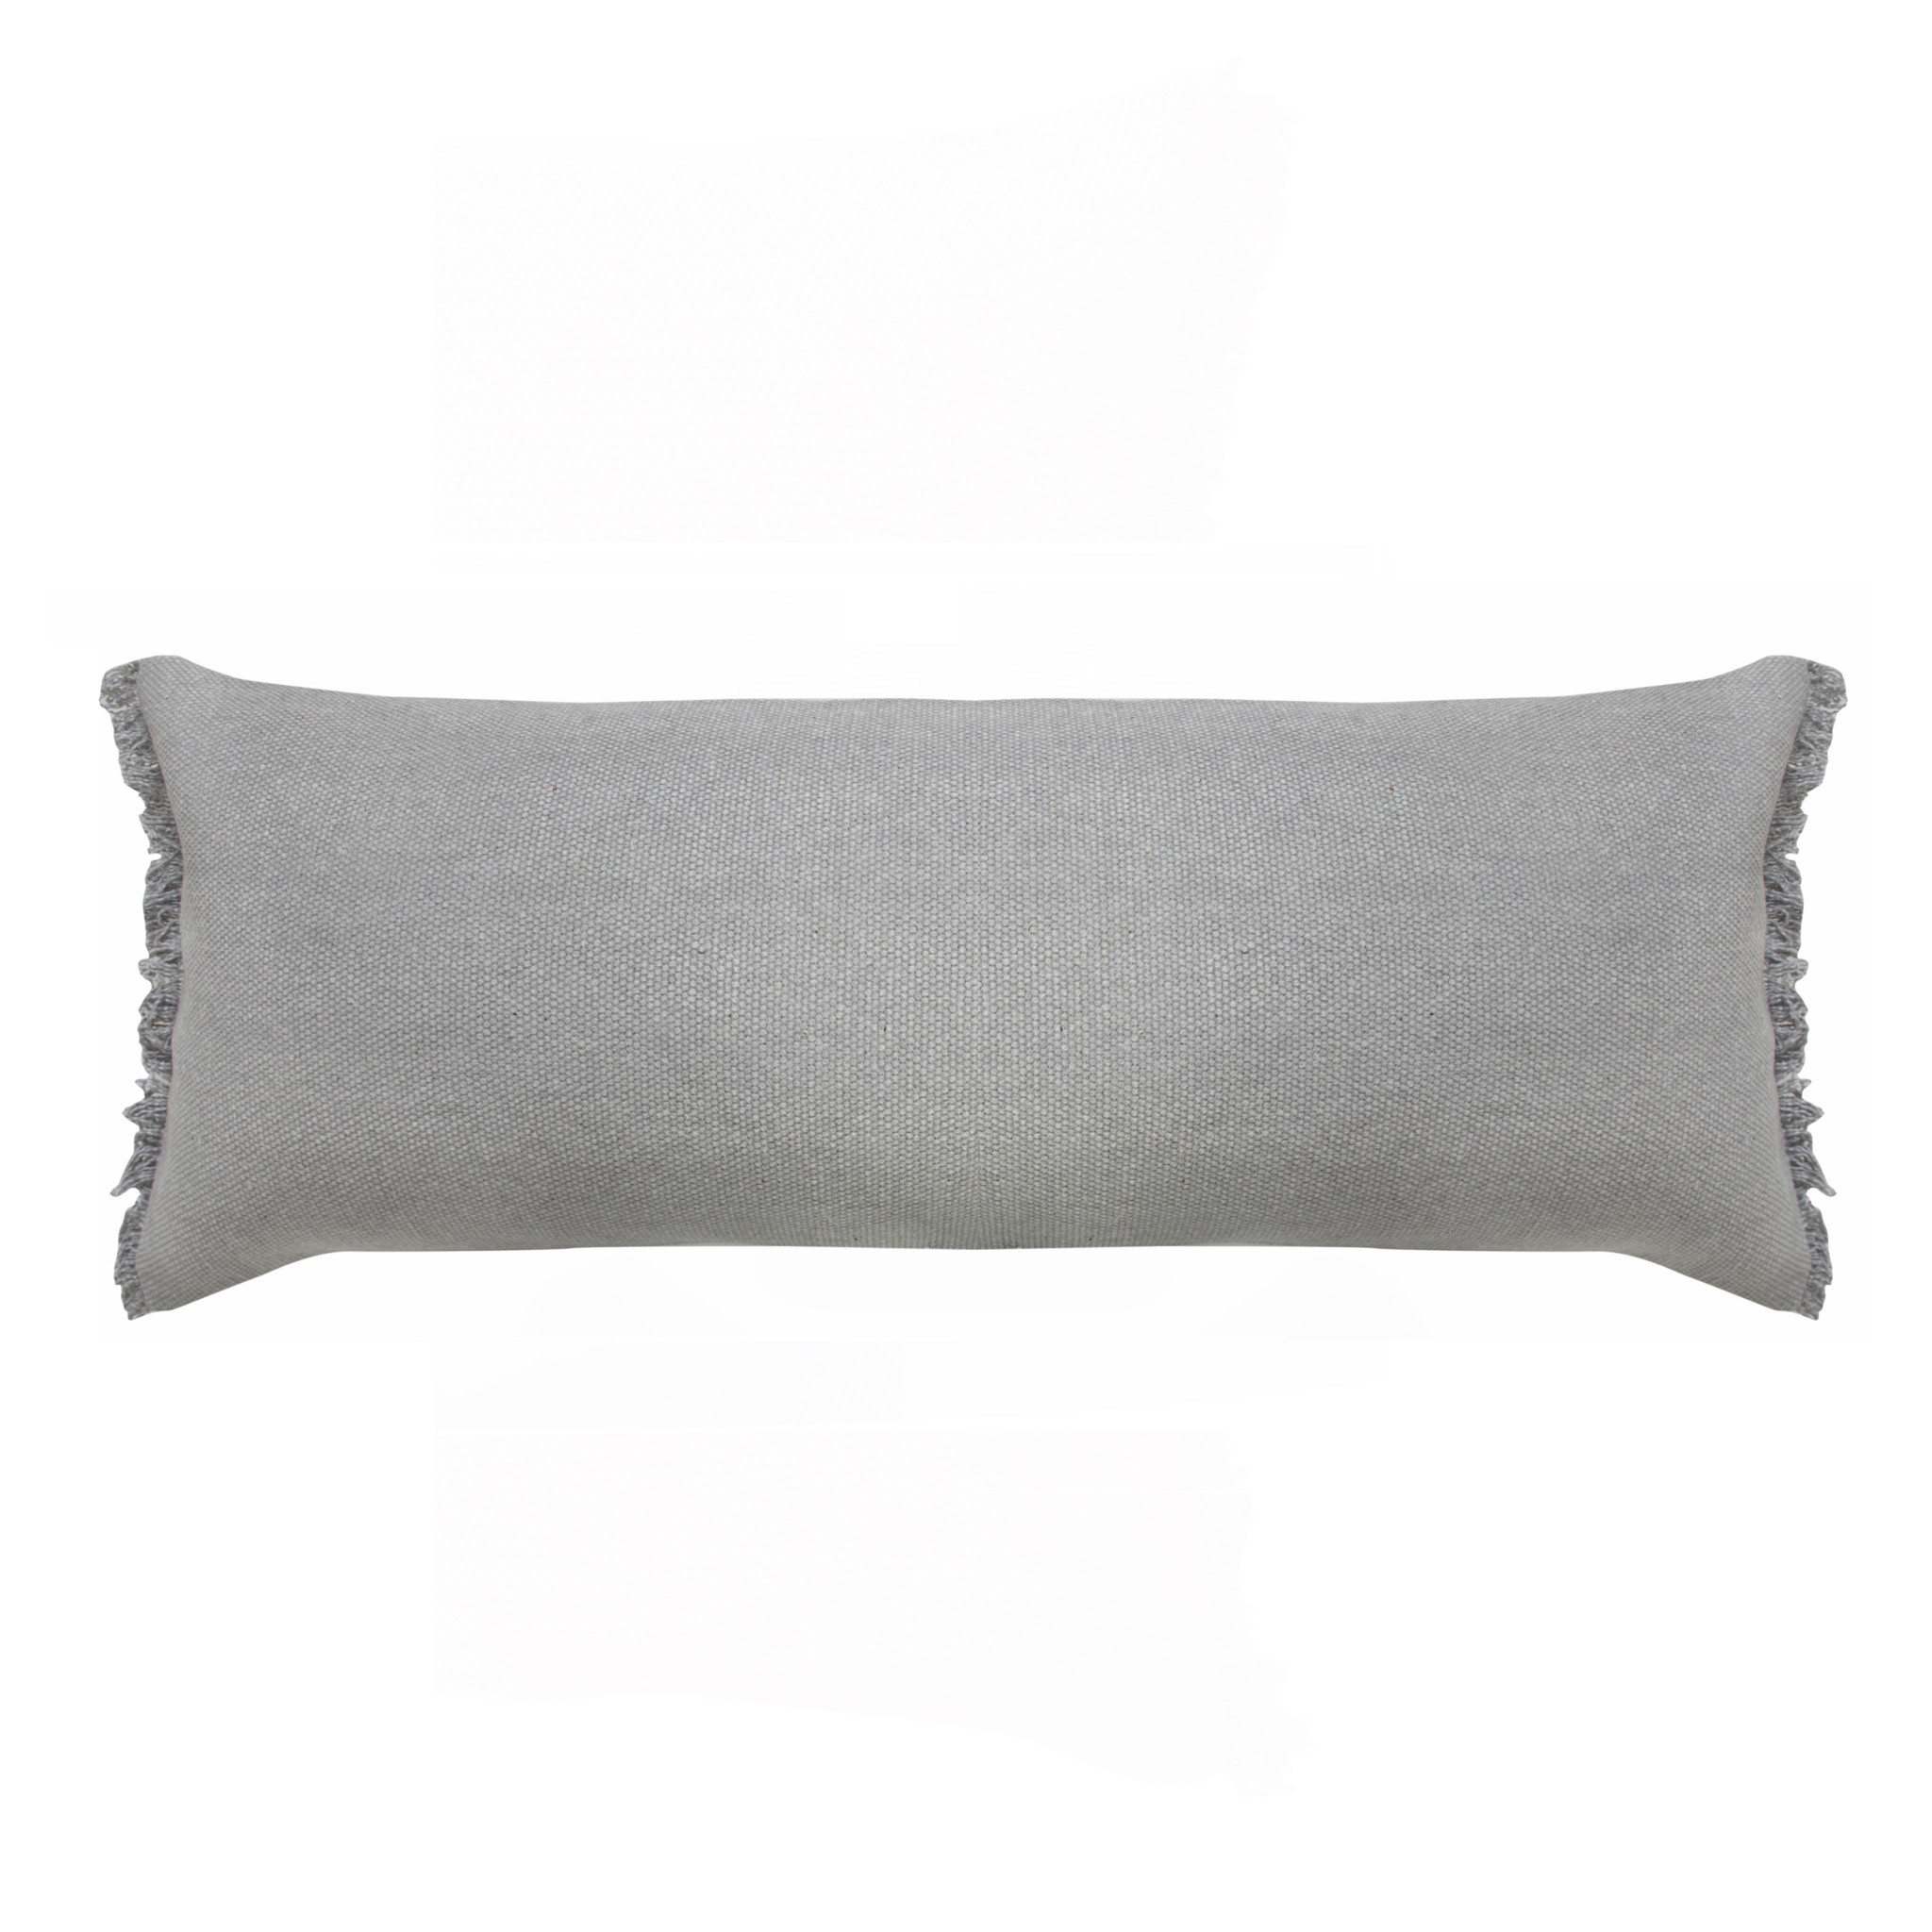 14" X 36" Light Gray 100% Cotton Zippered Pillow-517339-1